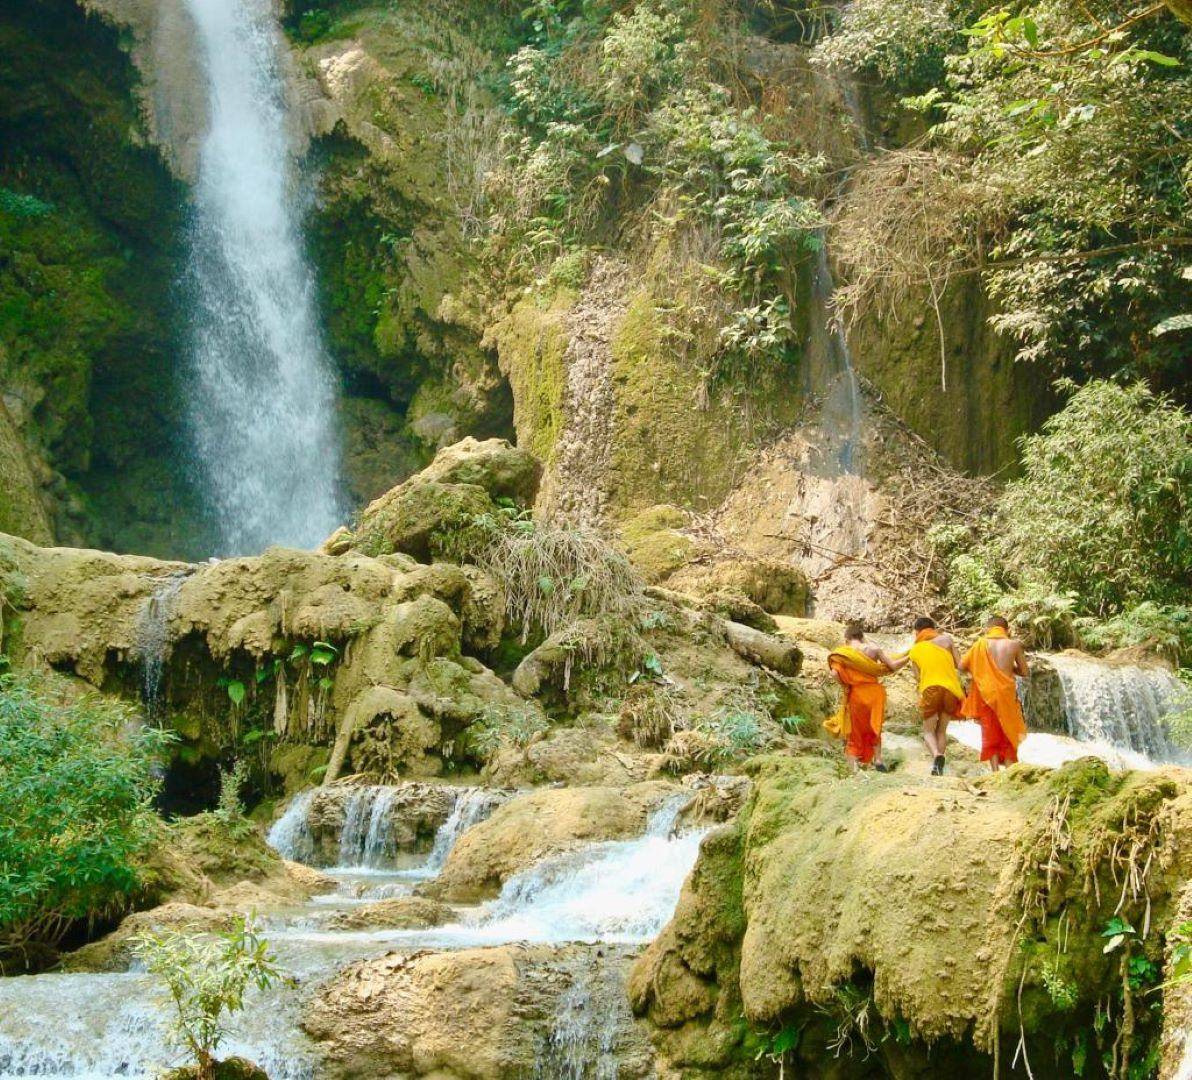 Kuang Si erkunden: Von den Wasserfällen zu den Hmong